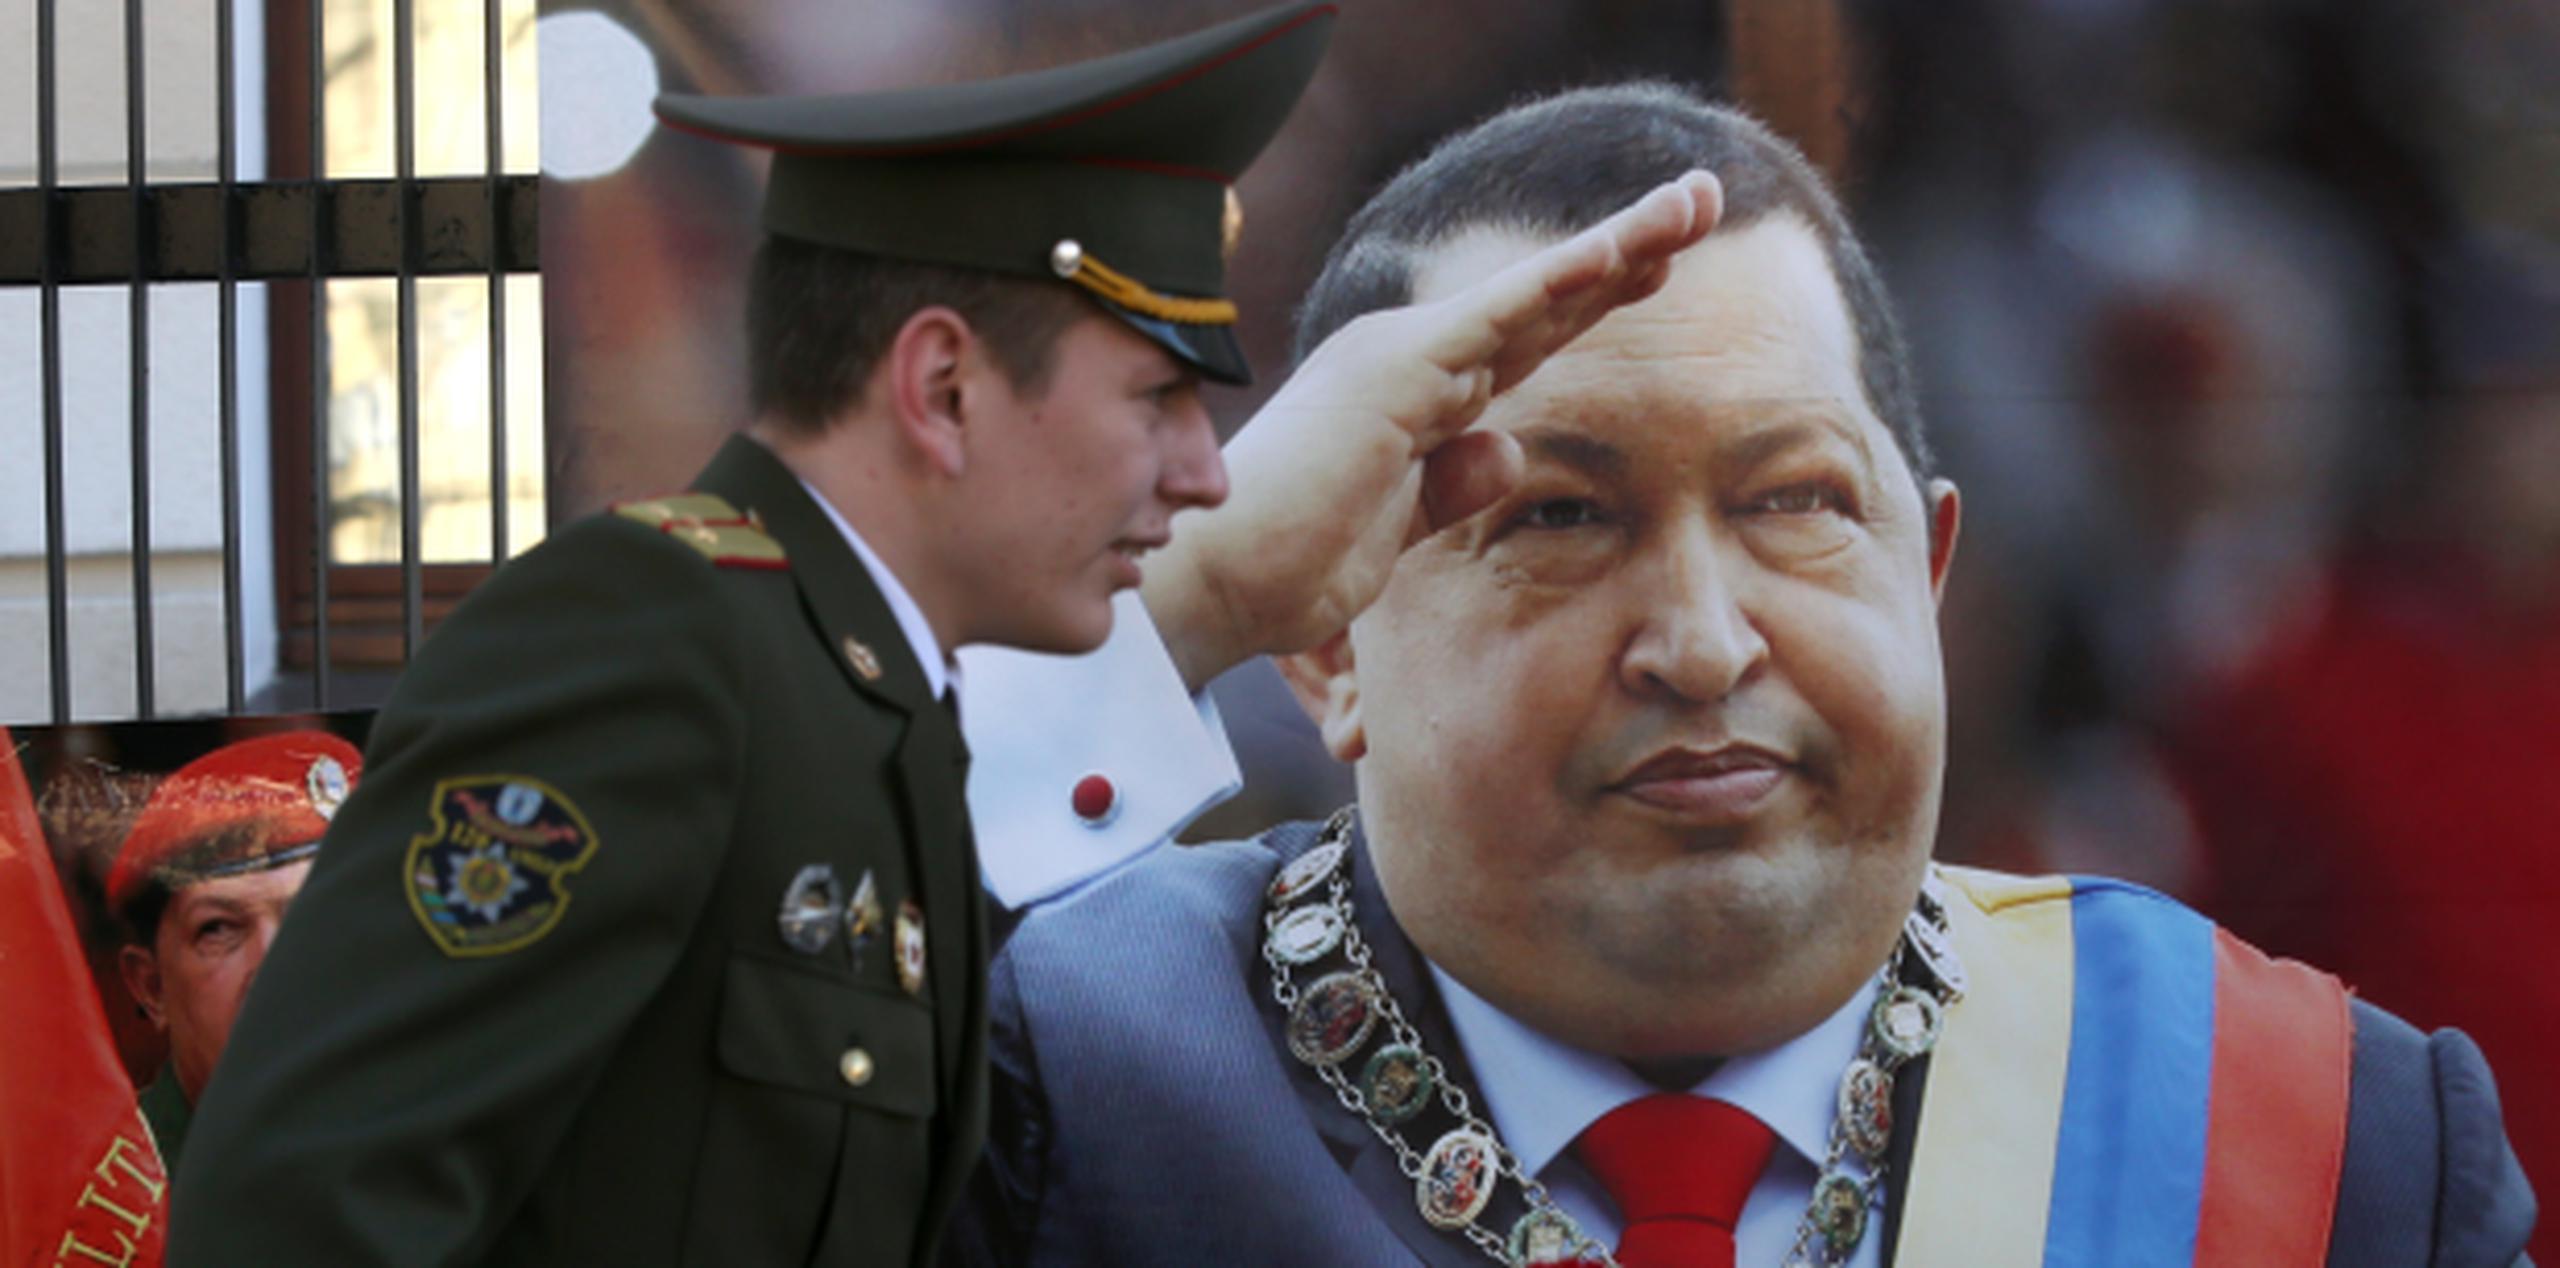 Muchos critican que la generosidad de Chávez estuvo motivada por sus intentos propagandísticos en EEUU. (EFE)